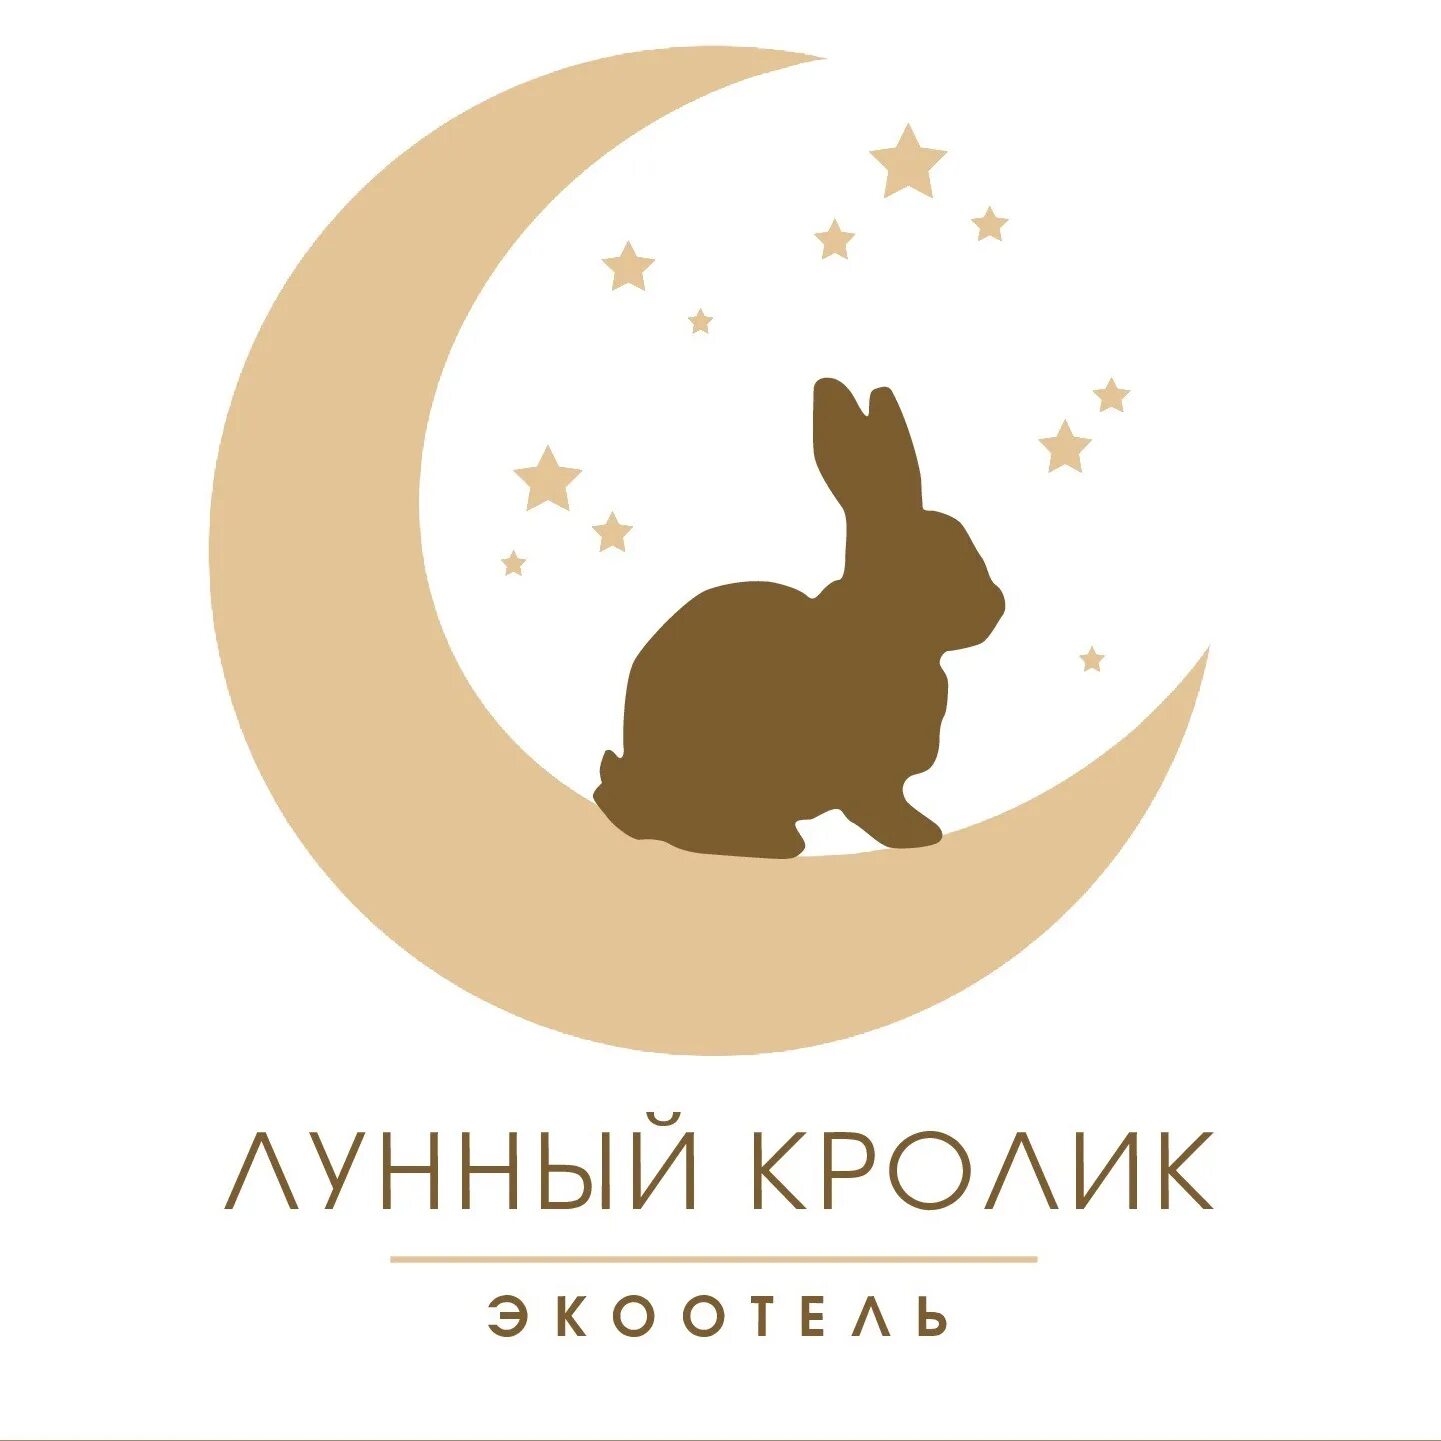 Эко отель лунный кролик. Лунный кролик. Лунный кролик Экоотель. Лунный кролик Легенда. Кролик на Луне.